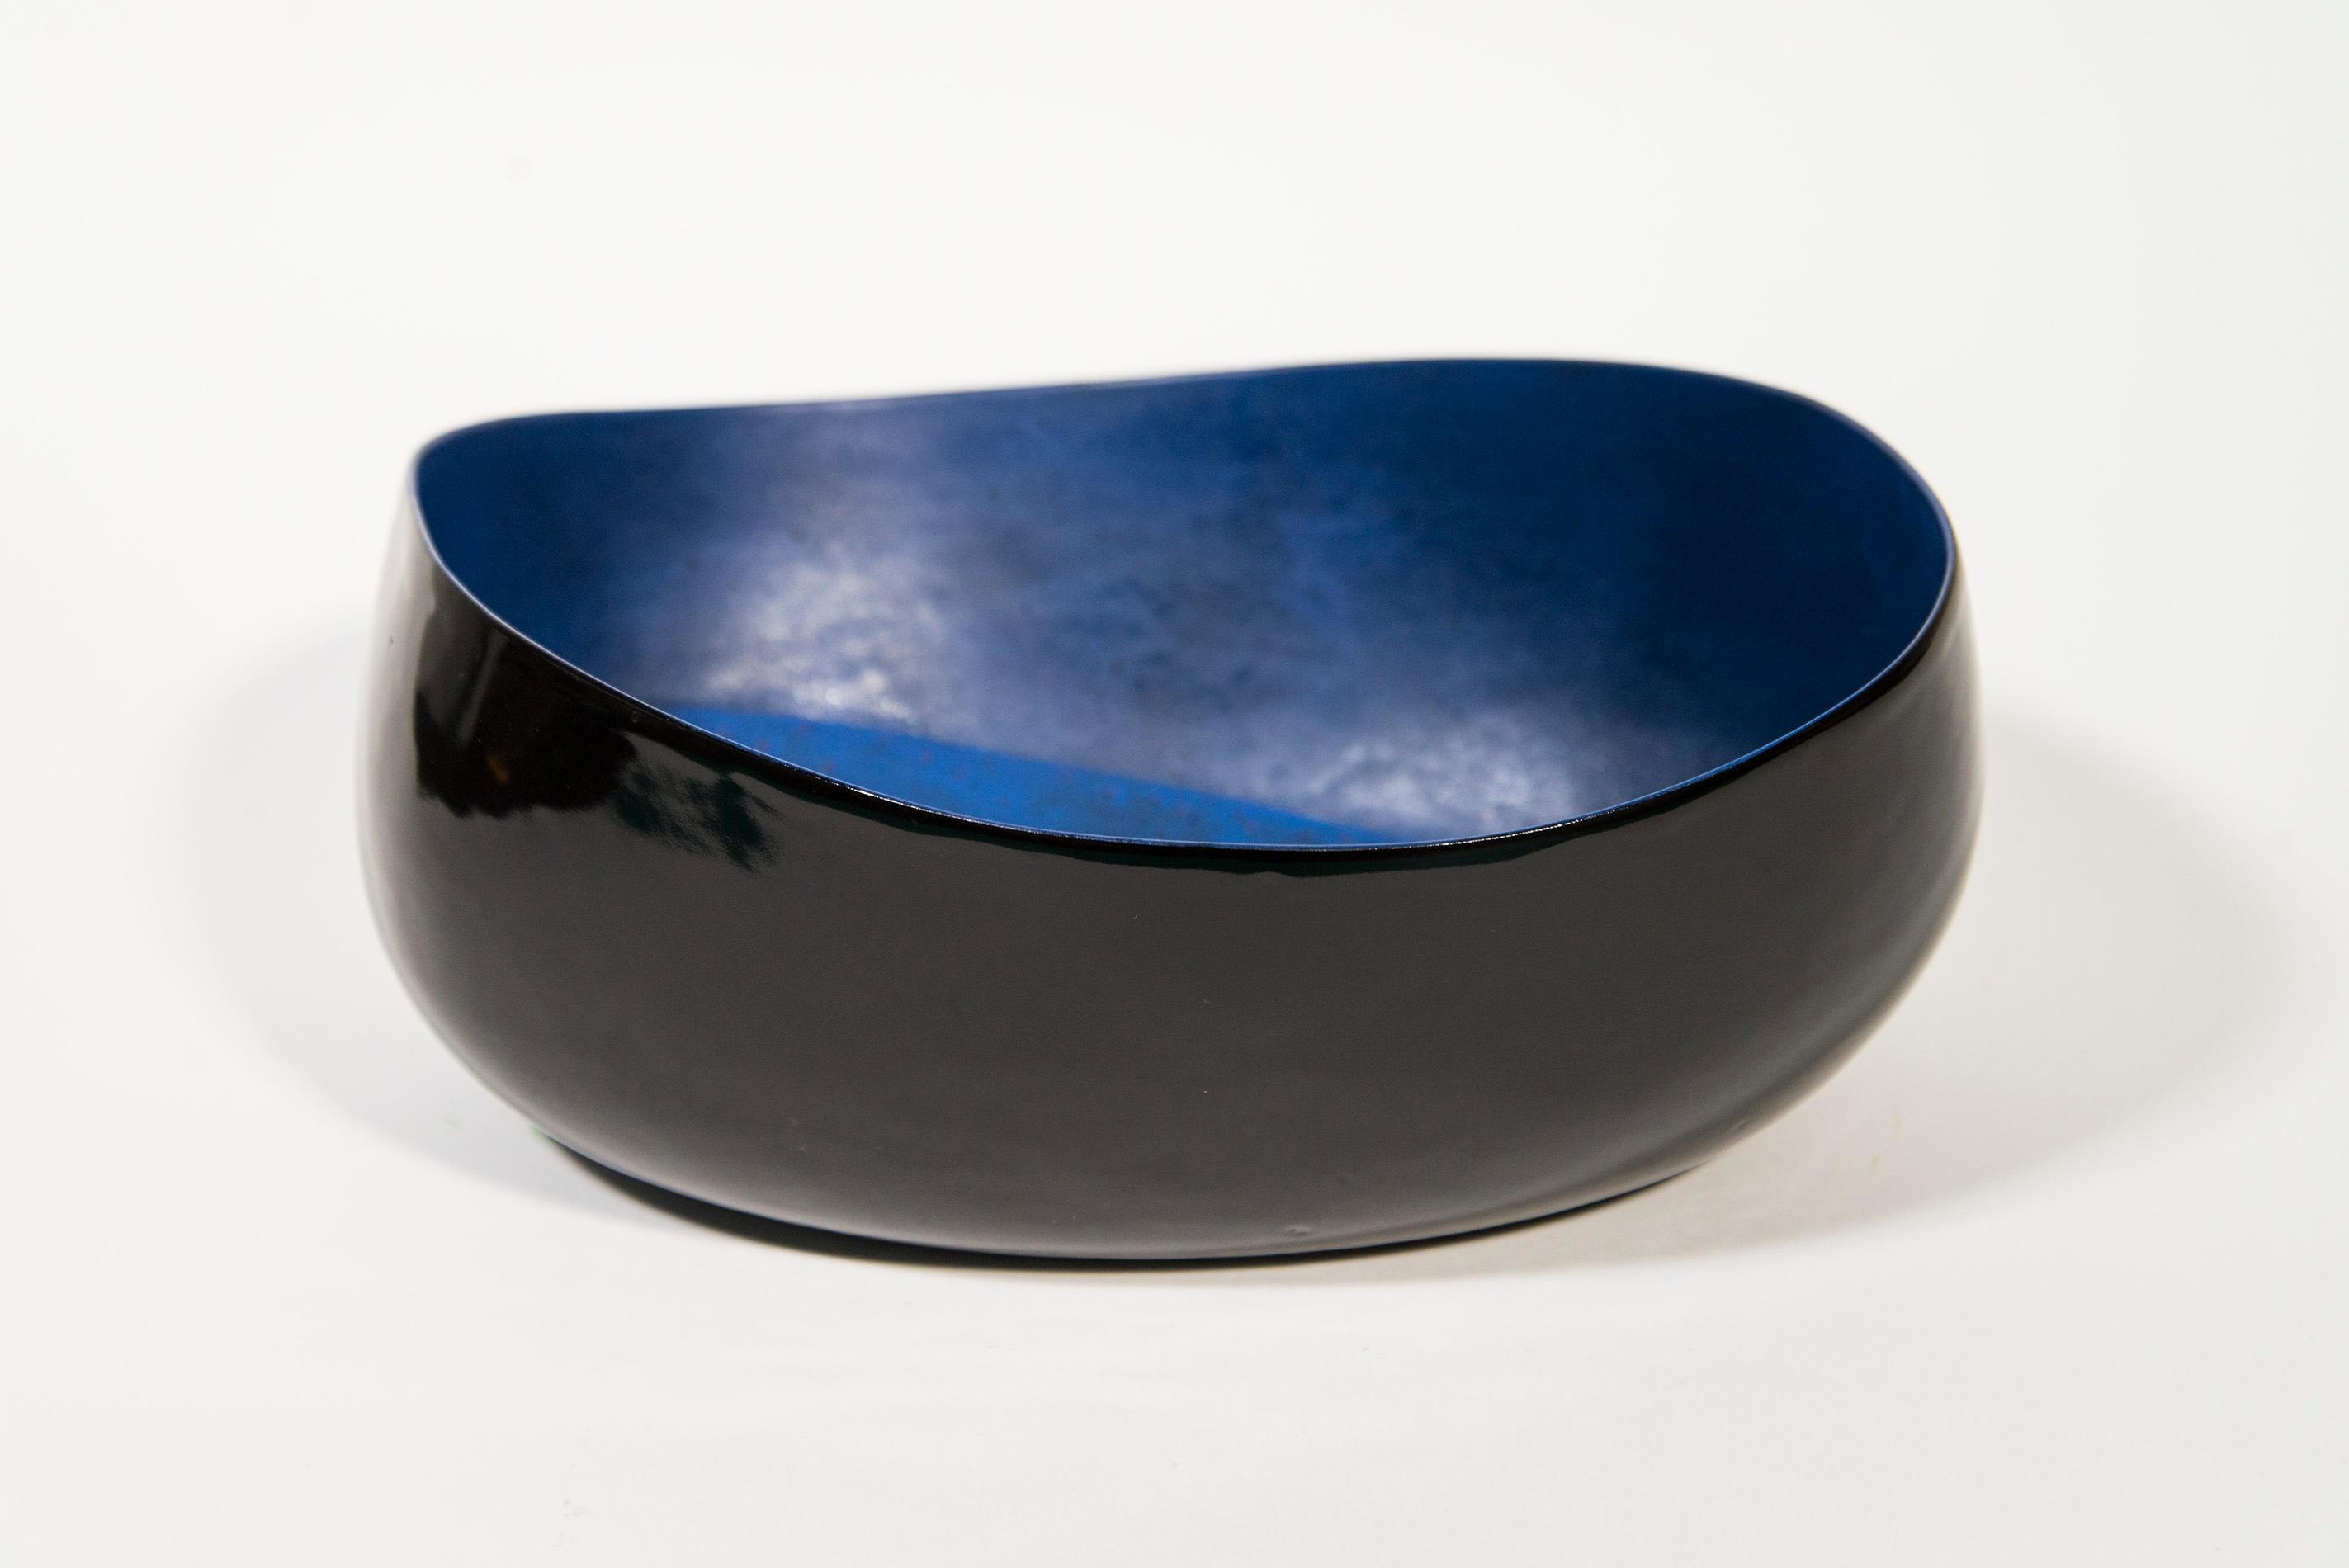 Afterlife No 3  - blue, black, nature inspired, elongated, ceramic vessel - Sculpture by Steven Heinemann